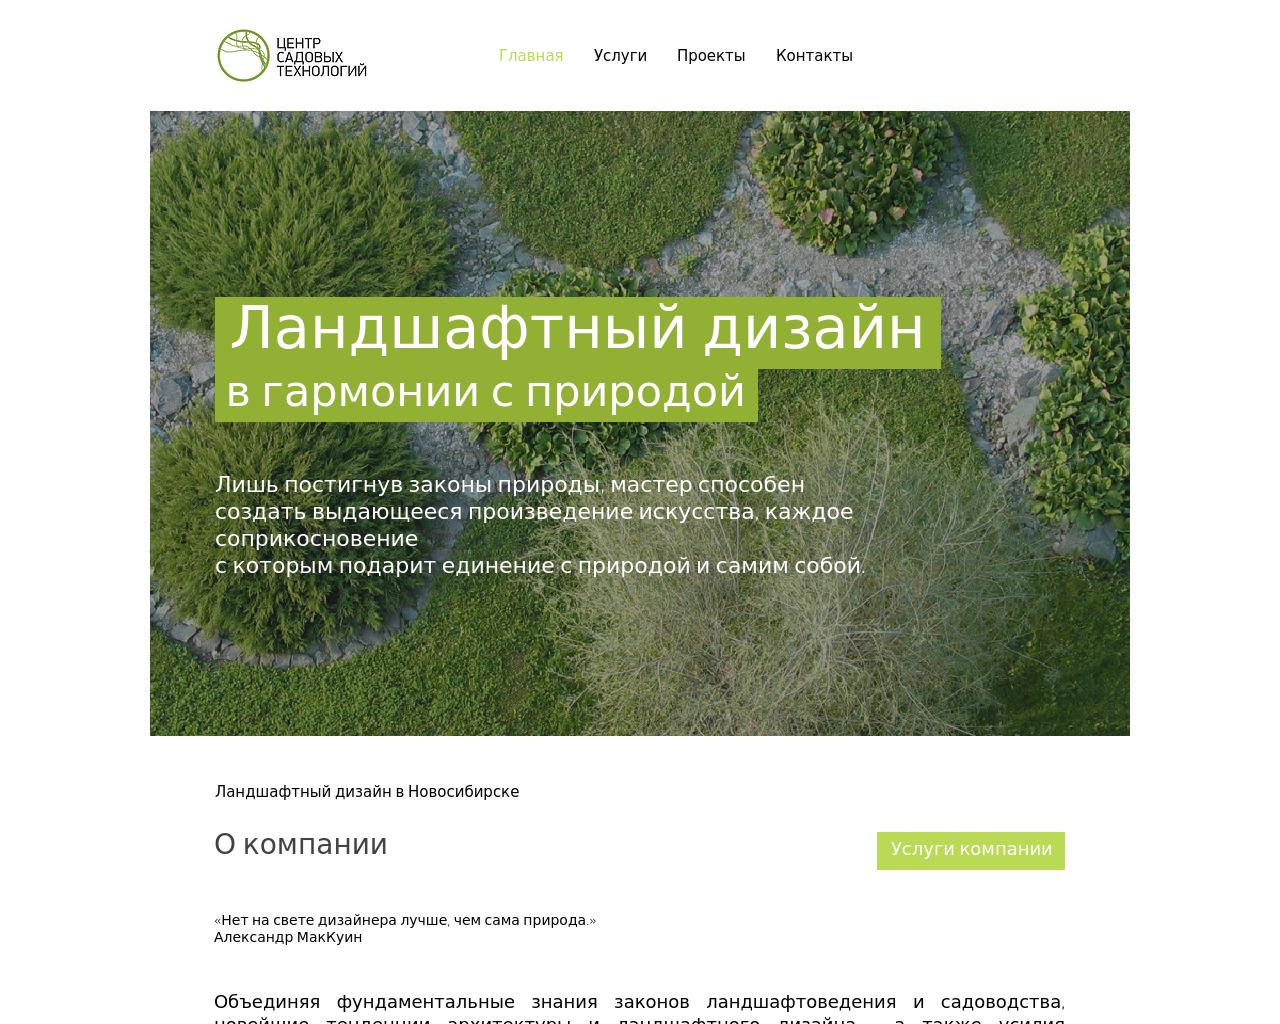 Изображение сайта greencentr.ru в разрешении 1280x1024